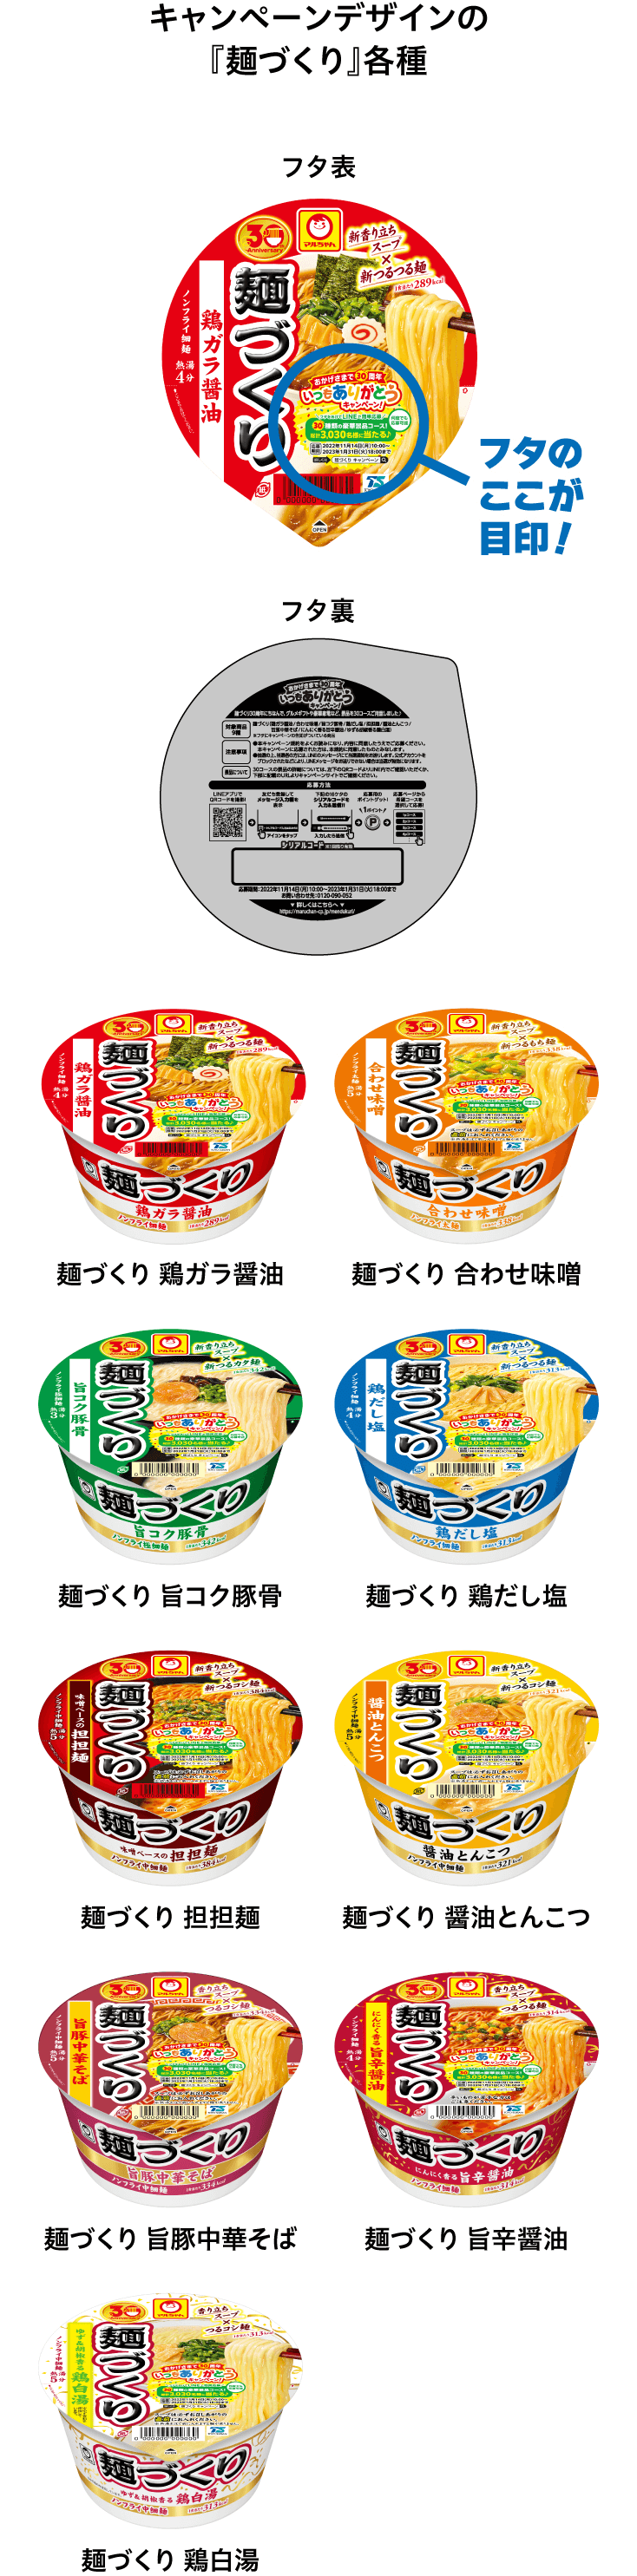 キャンペーンデザインの『麺づくり』各種